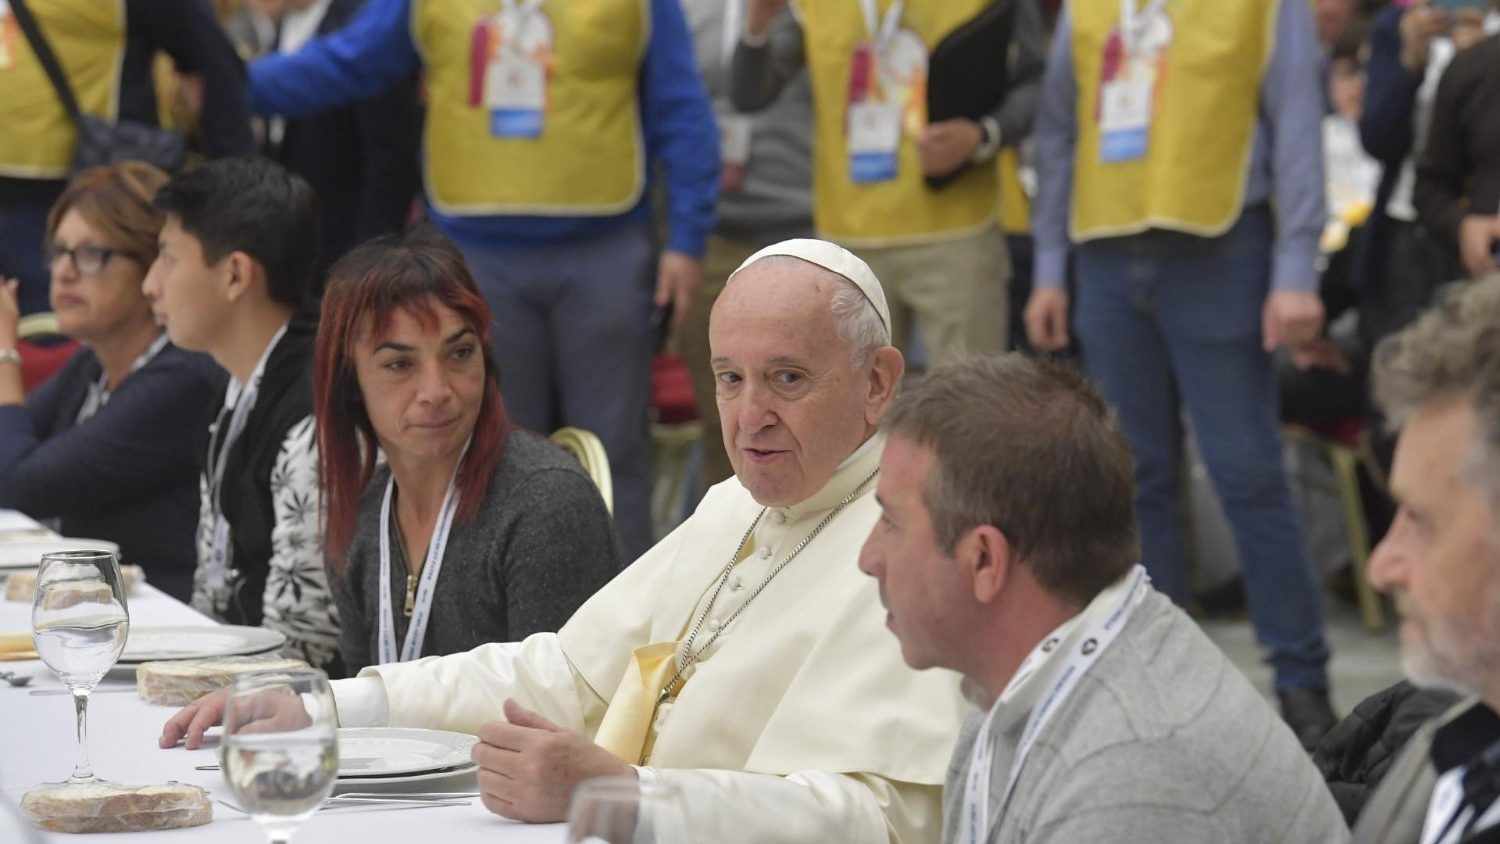 El Papa desayuna con los pobres